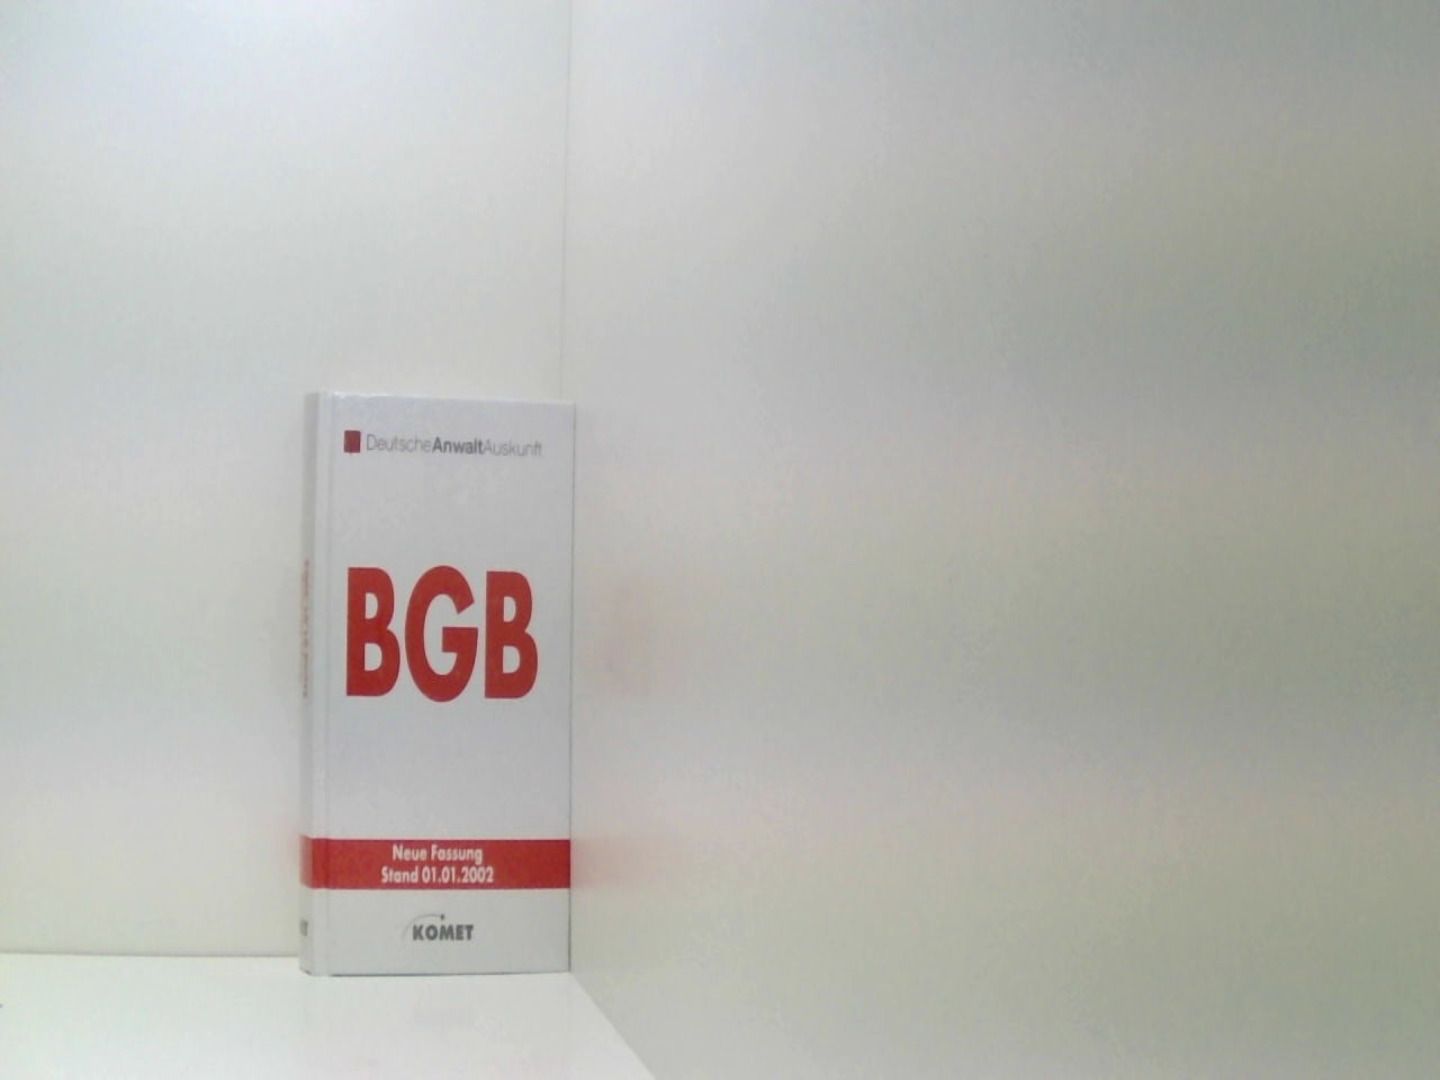 BGB - Bürgerliches Gesetzbuch 2002 - Deutsche AnwaltAuskunft, (Herausgeber)